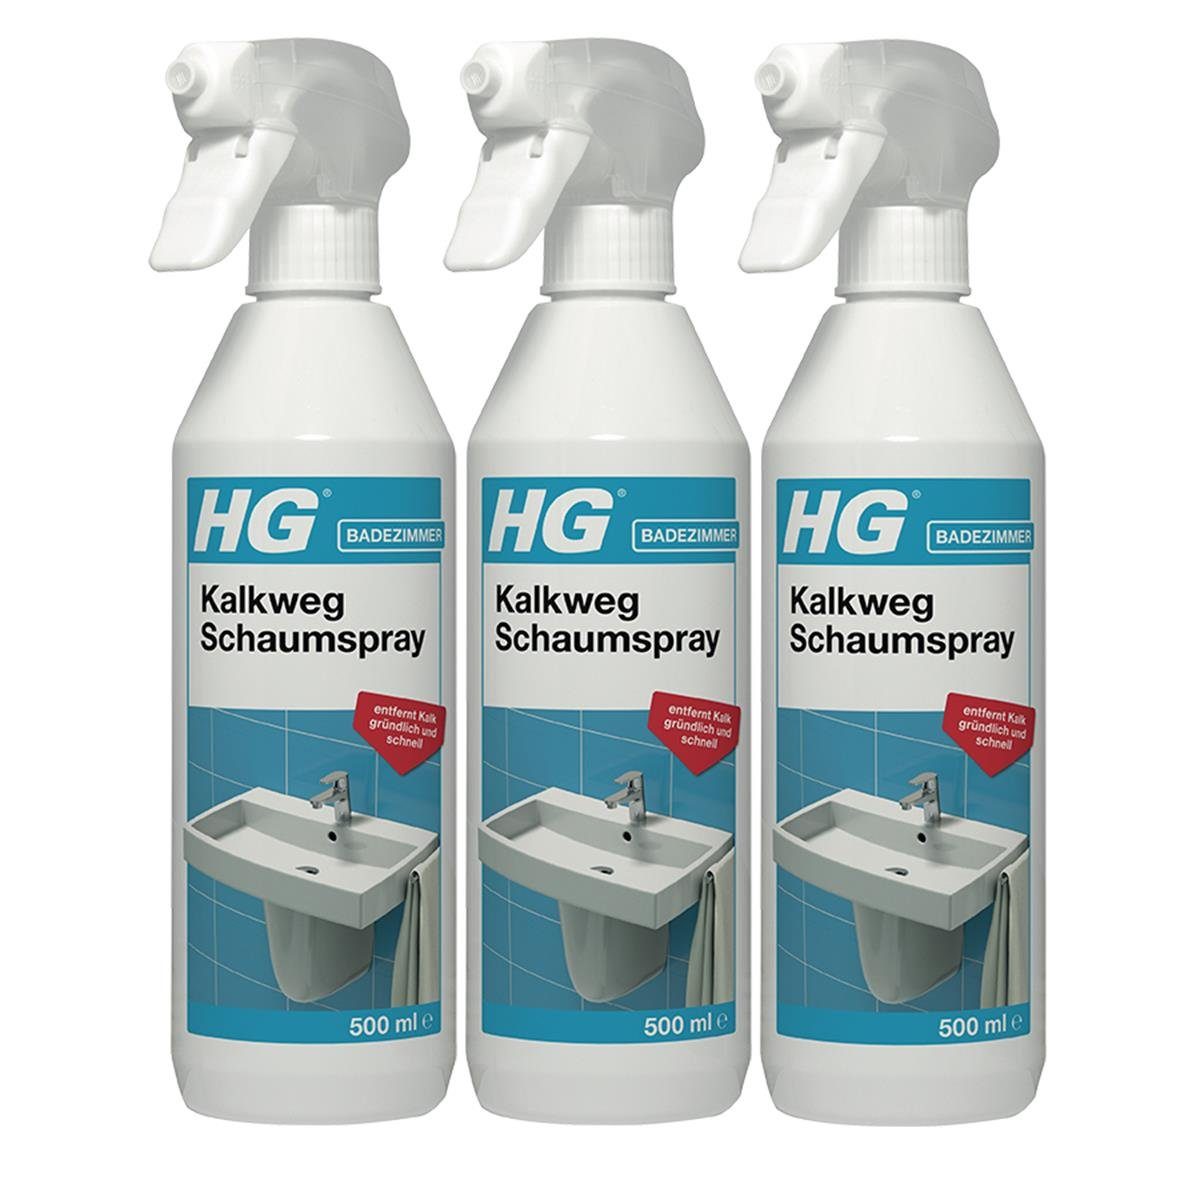 HG HG Kalkweg Schaumspray 500ml - Entfernt Kalk gründlich (3er Pack) Badreiniger